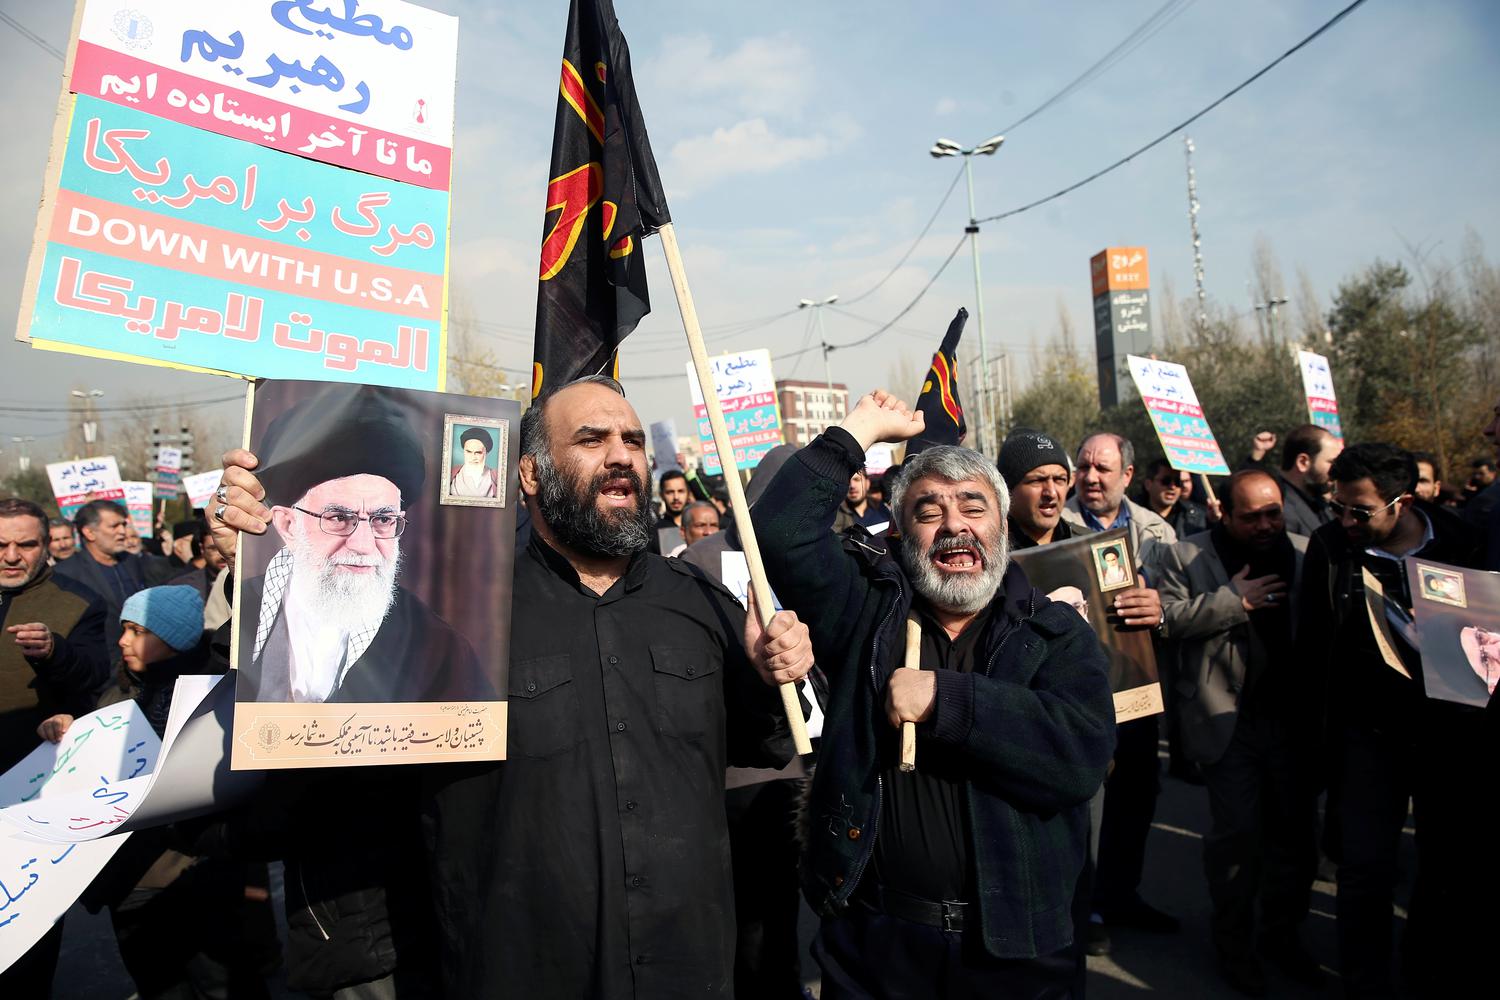 Demonstran berseru saat memprotes pembunuhan Mayor Jenderal Iran Qassem Soleimani, kapal Pasukan elit Quds, dan komandan millisi Irak Abu Mahdi al-Muhandis yang tewas dalam serangan udara di bandara Baghdad, di Teheran, Iran, Jumat (3/1/2020).